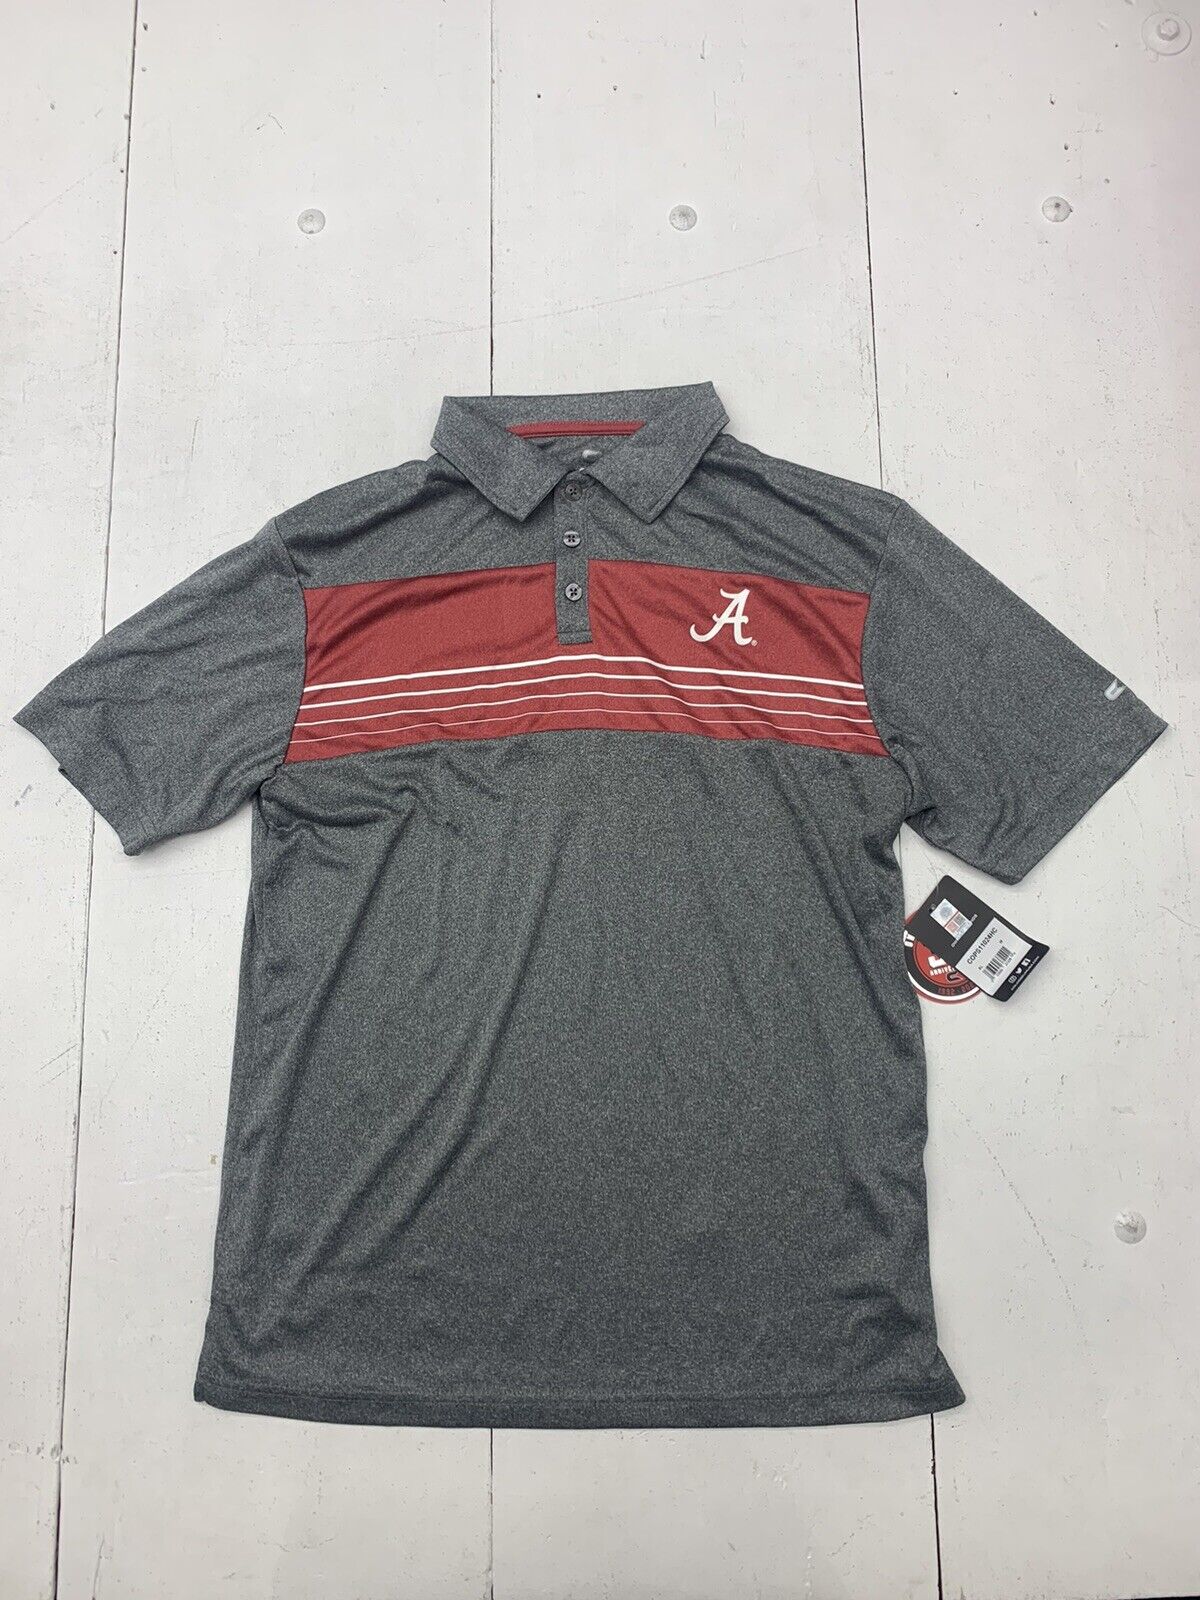 Colosseum Mens Grey Red Alabama Polo Shirt Size Medium